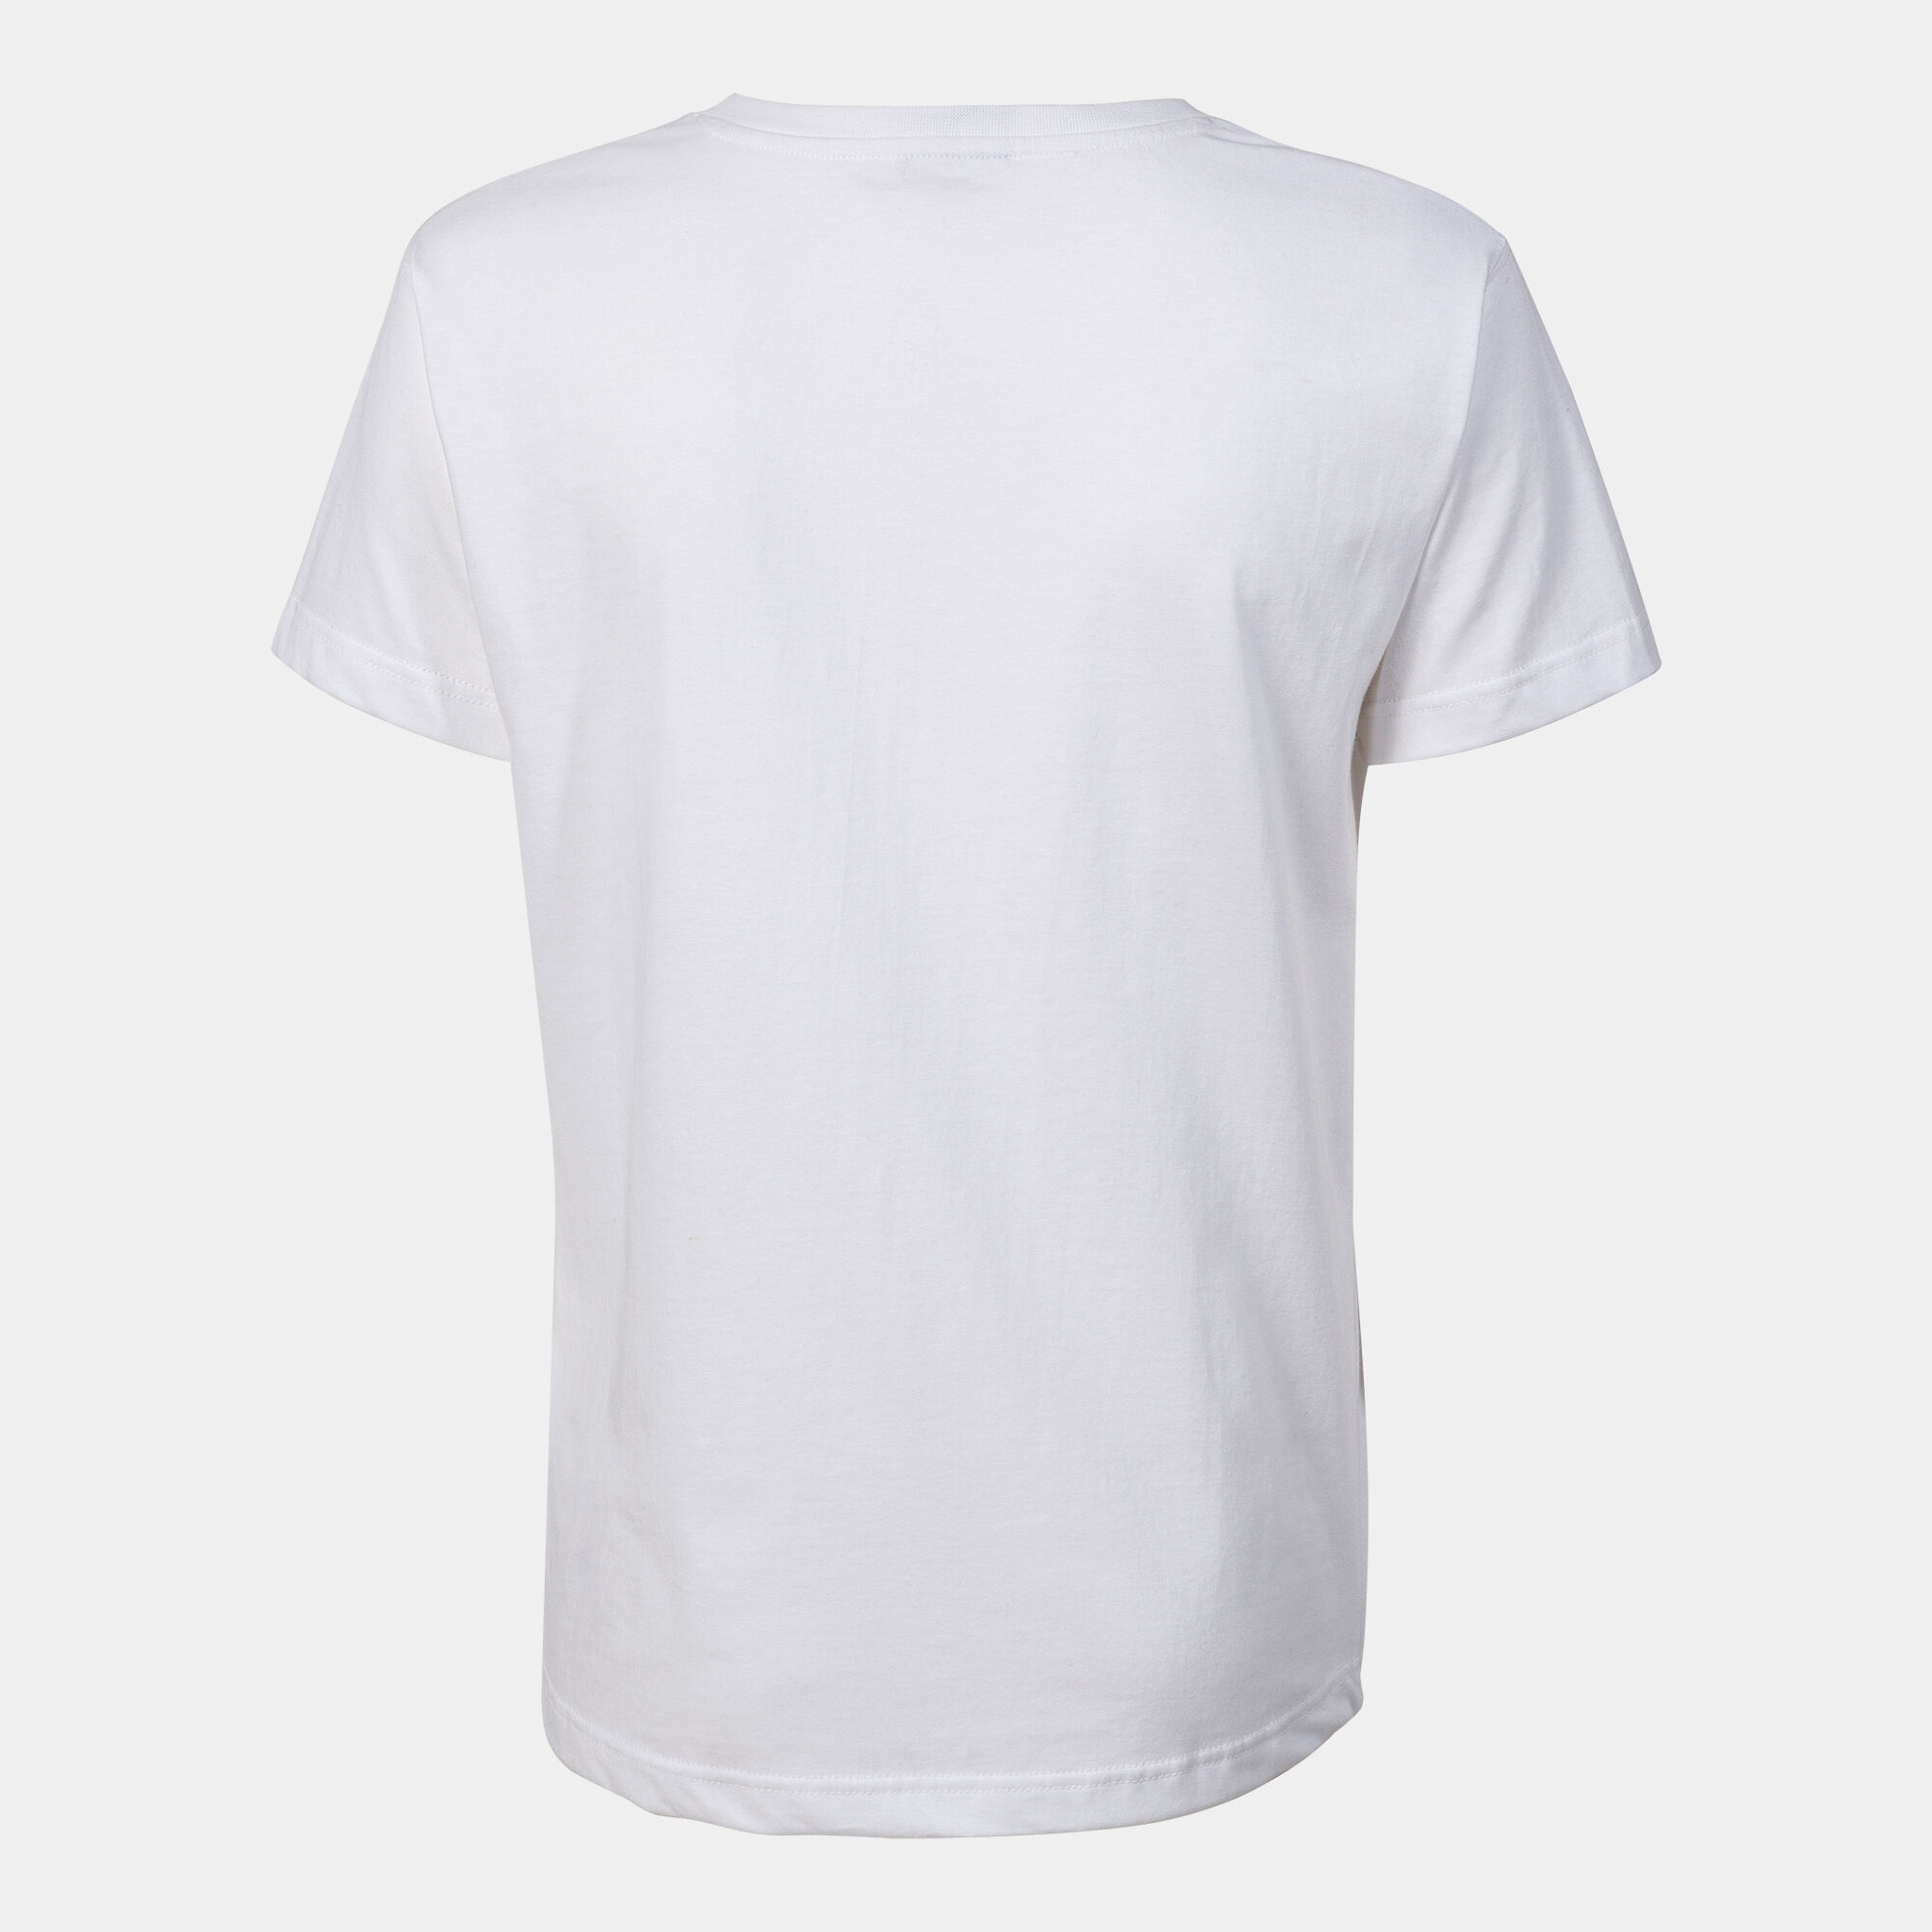 Camiseta manga corta mujer Versalles blanco